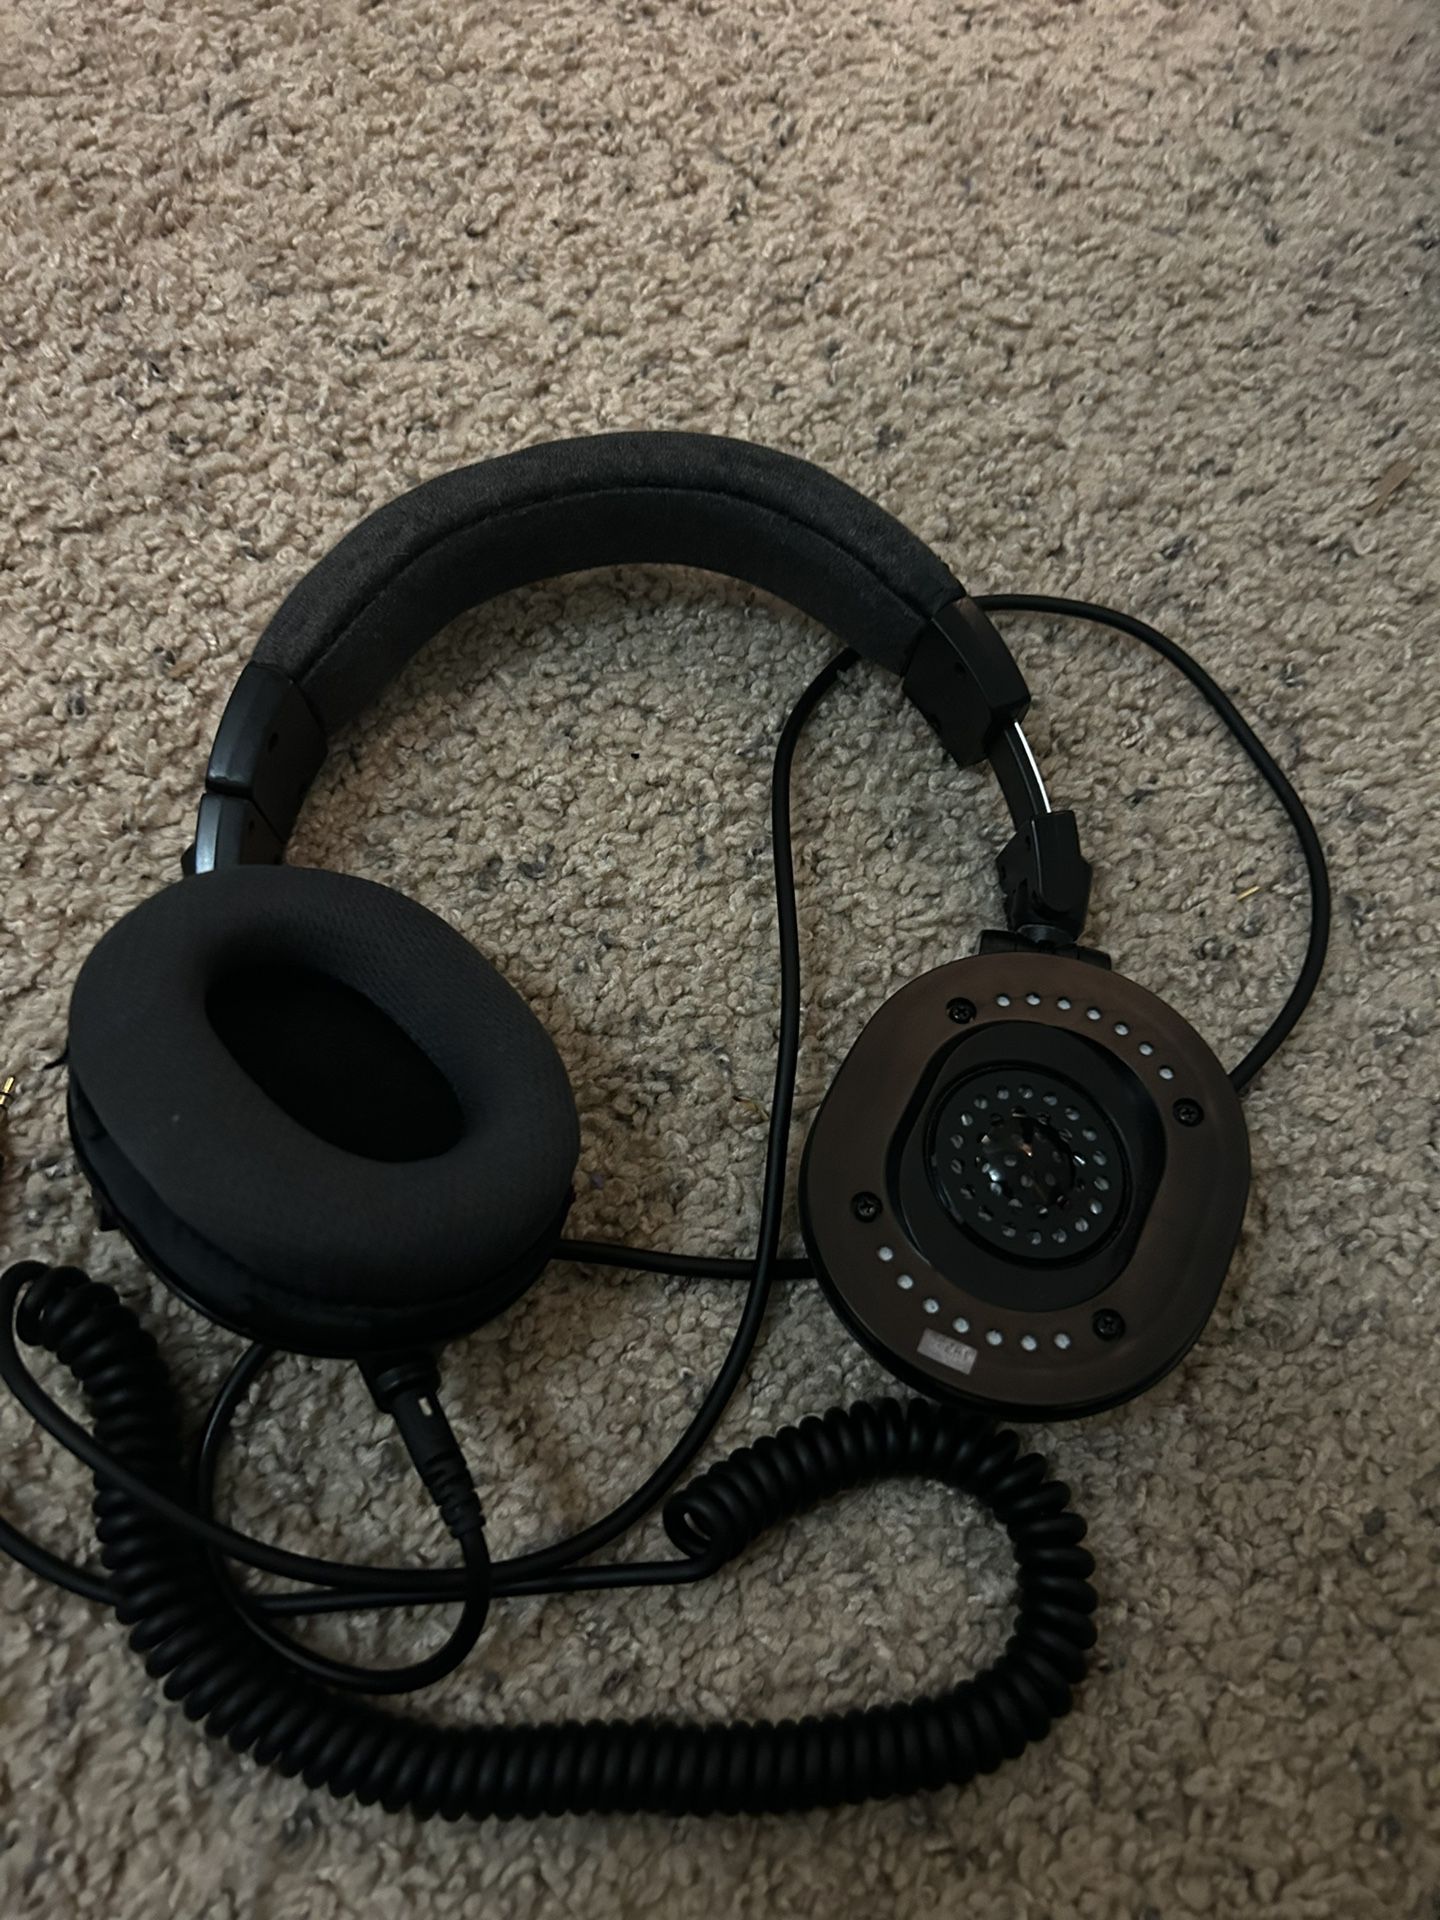 ATH M50x Headphones (Needs Repair)